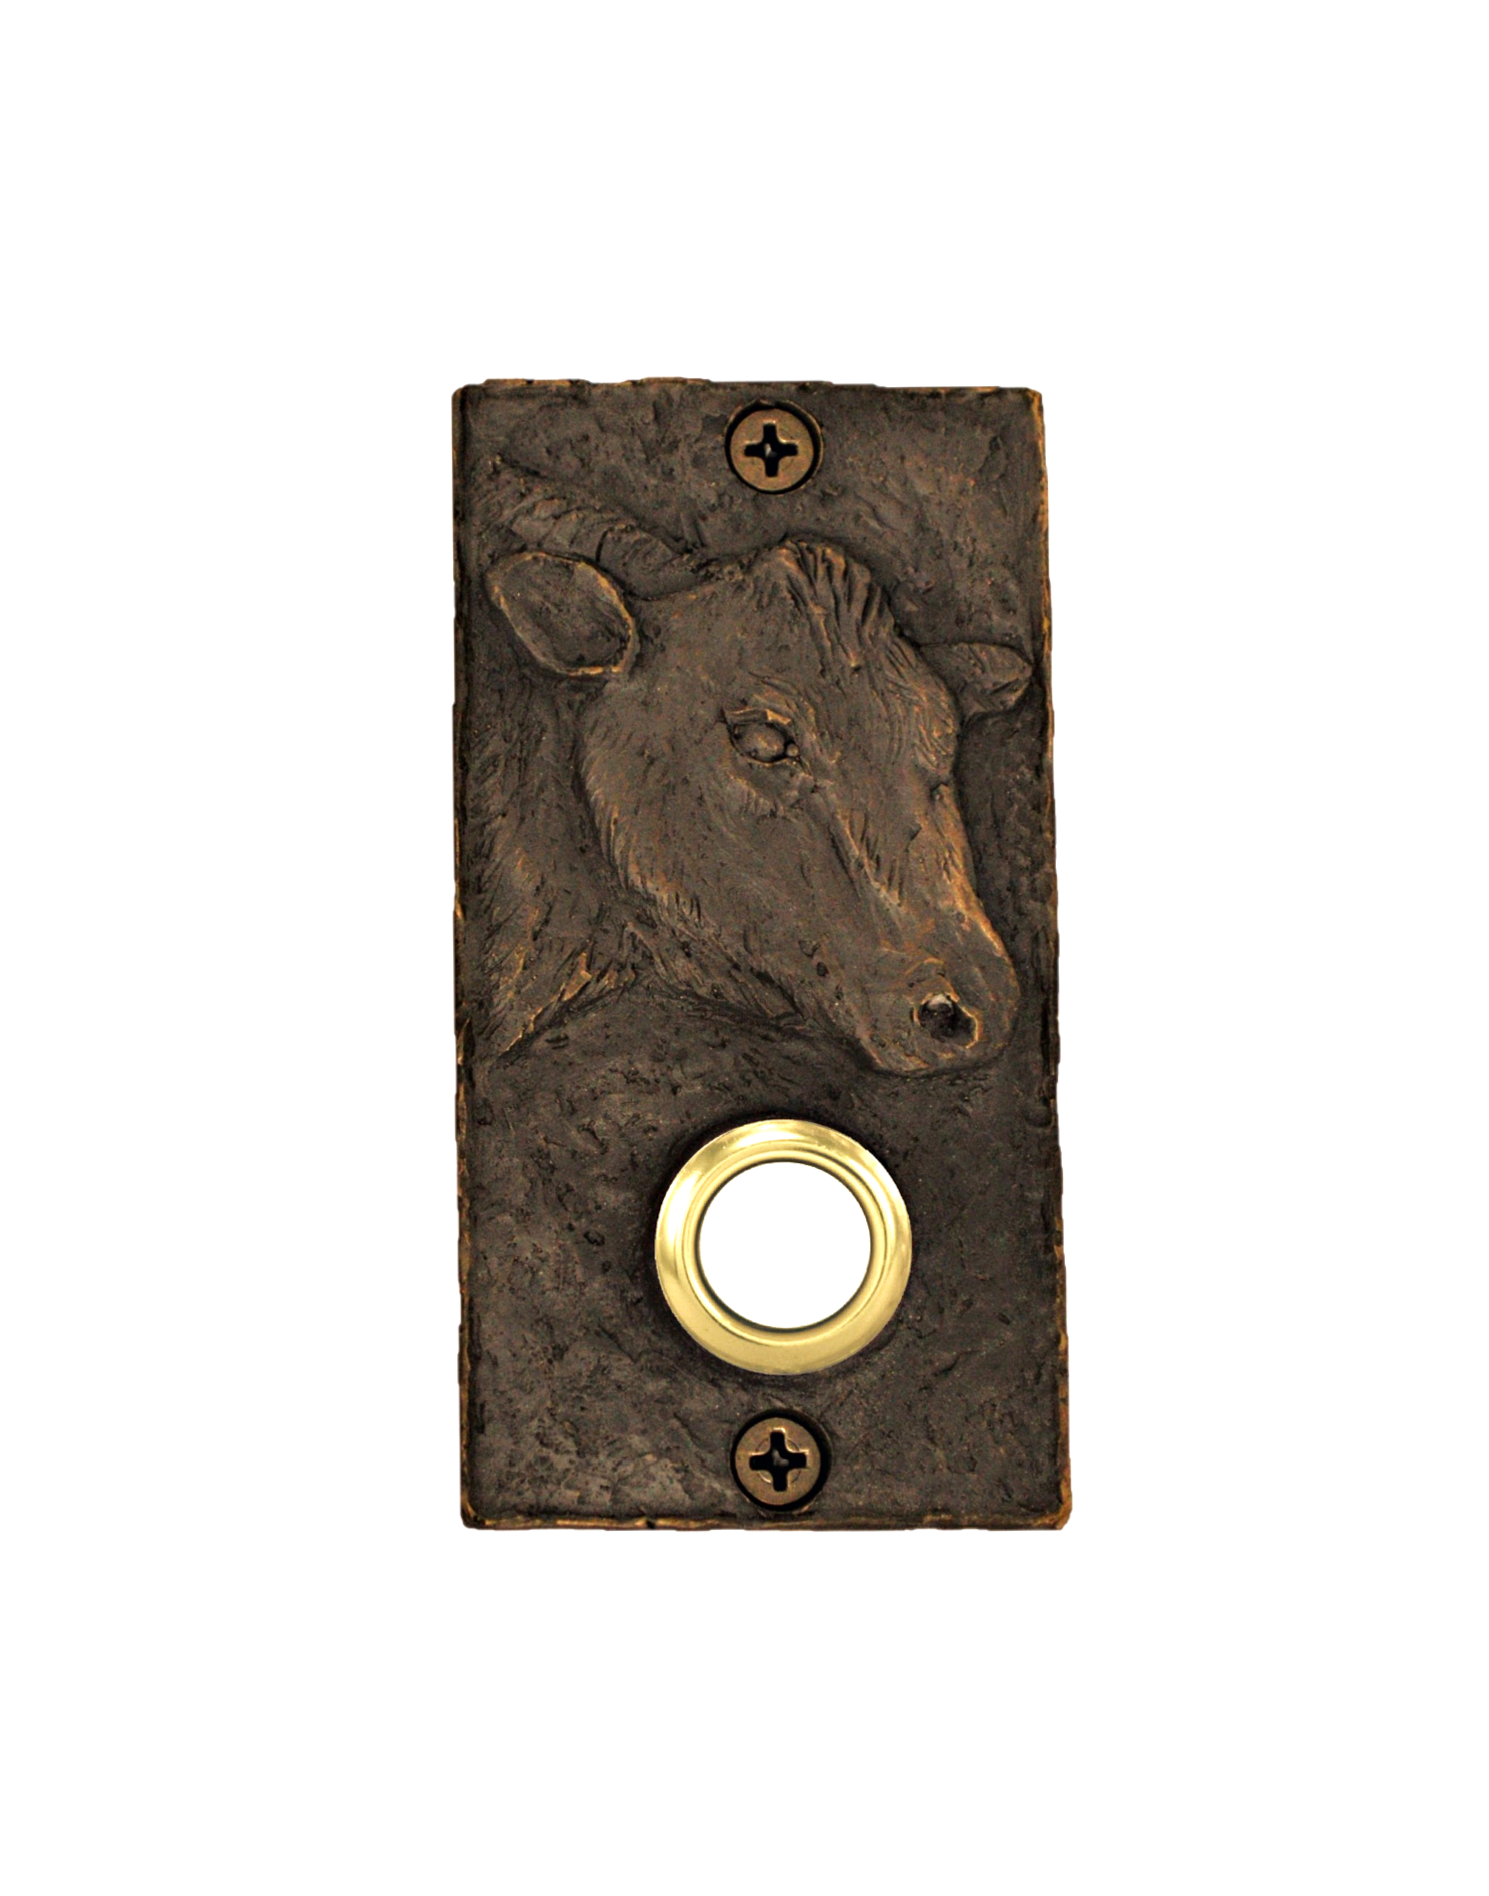 Cow doorbell made of bronze